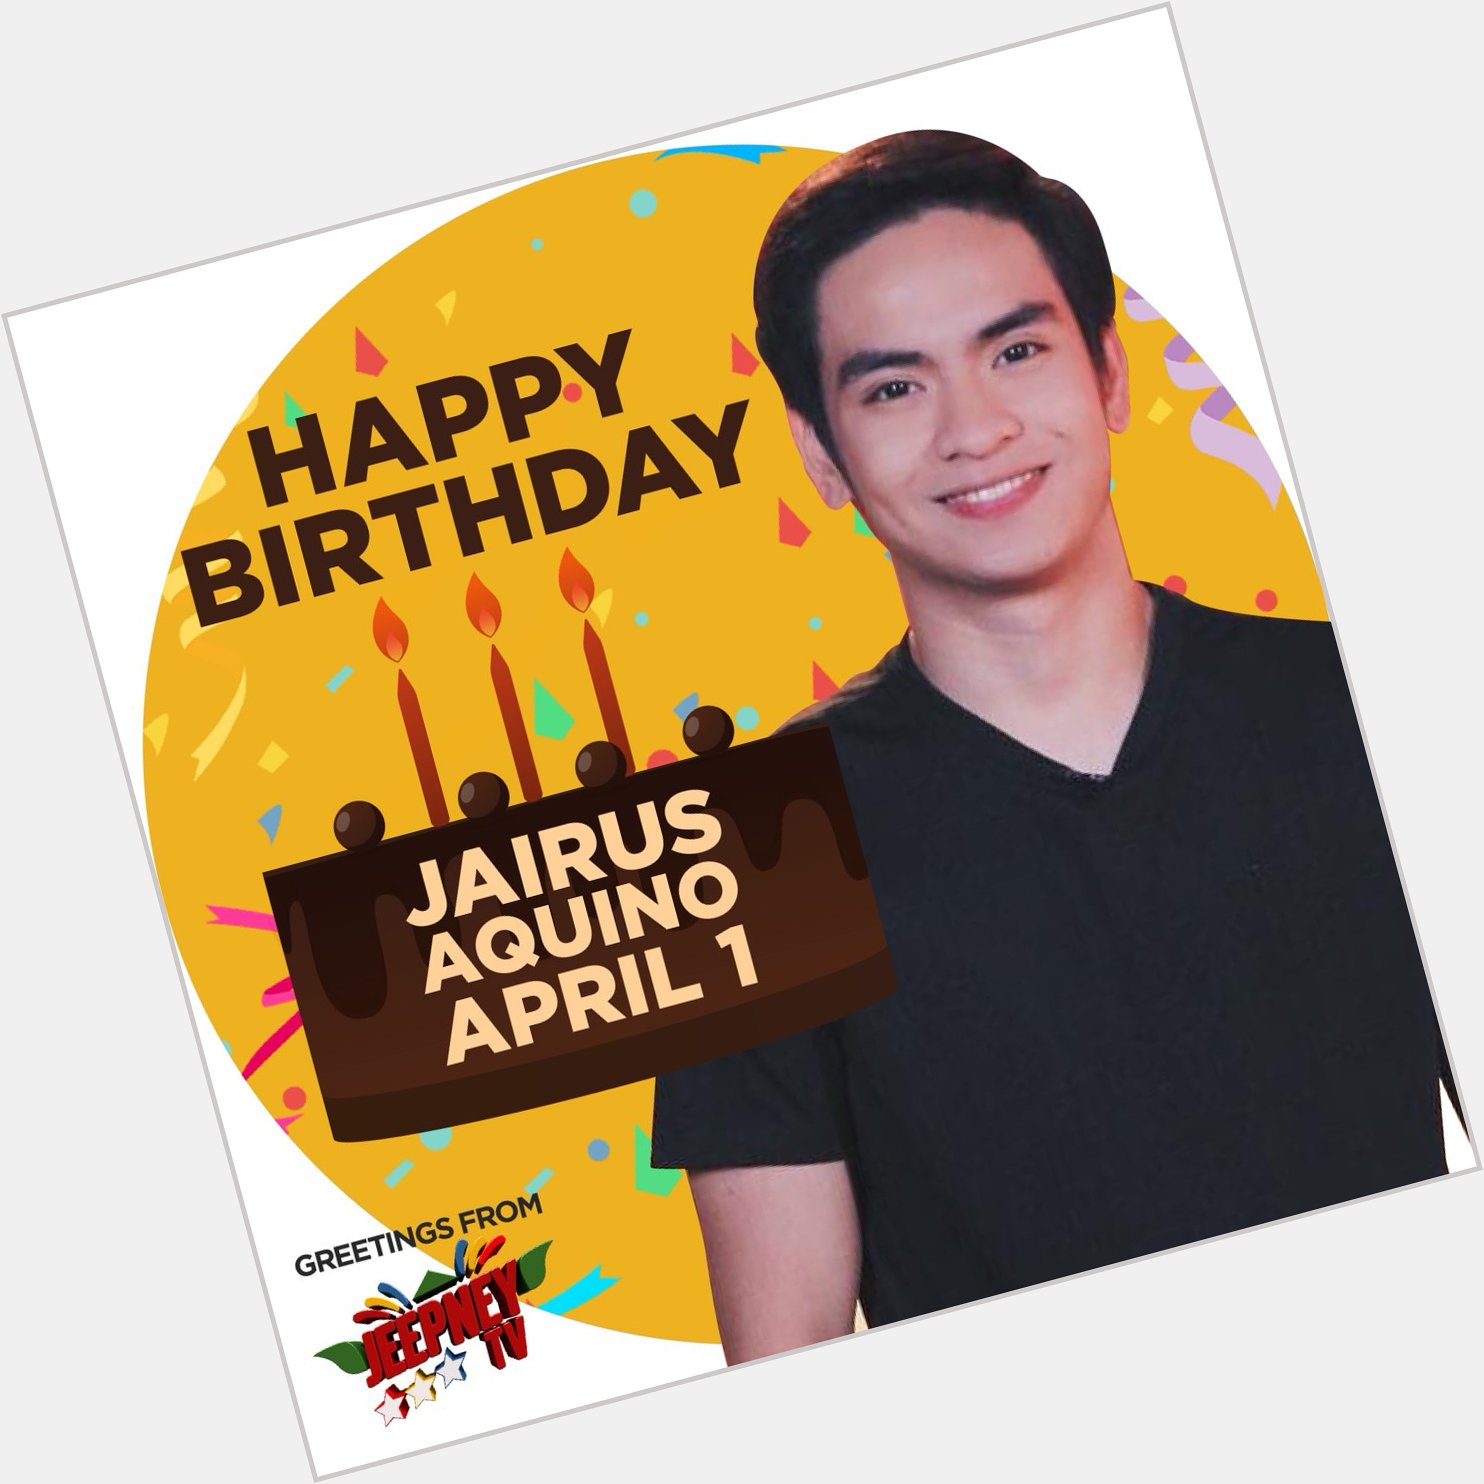 Happy Birthday, Jairus Aquino! From 